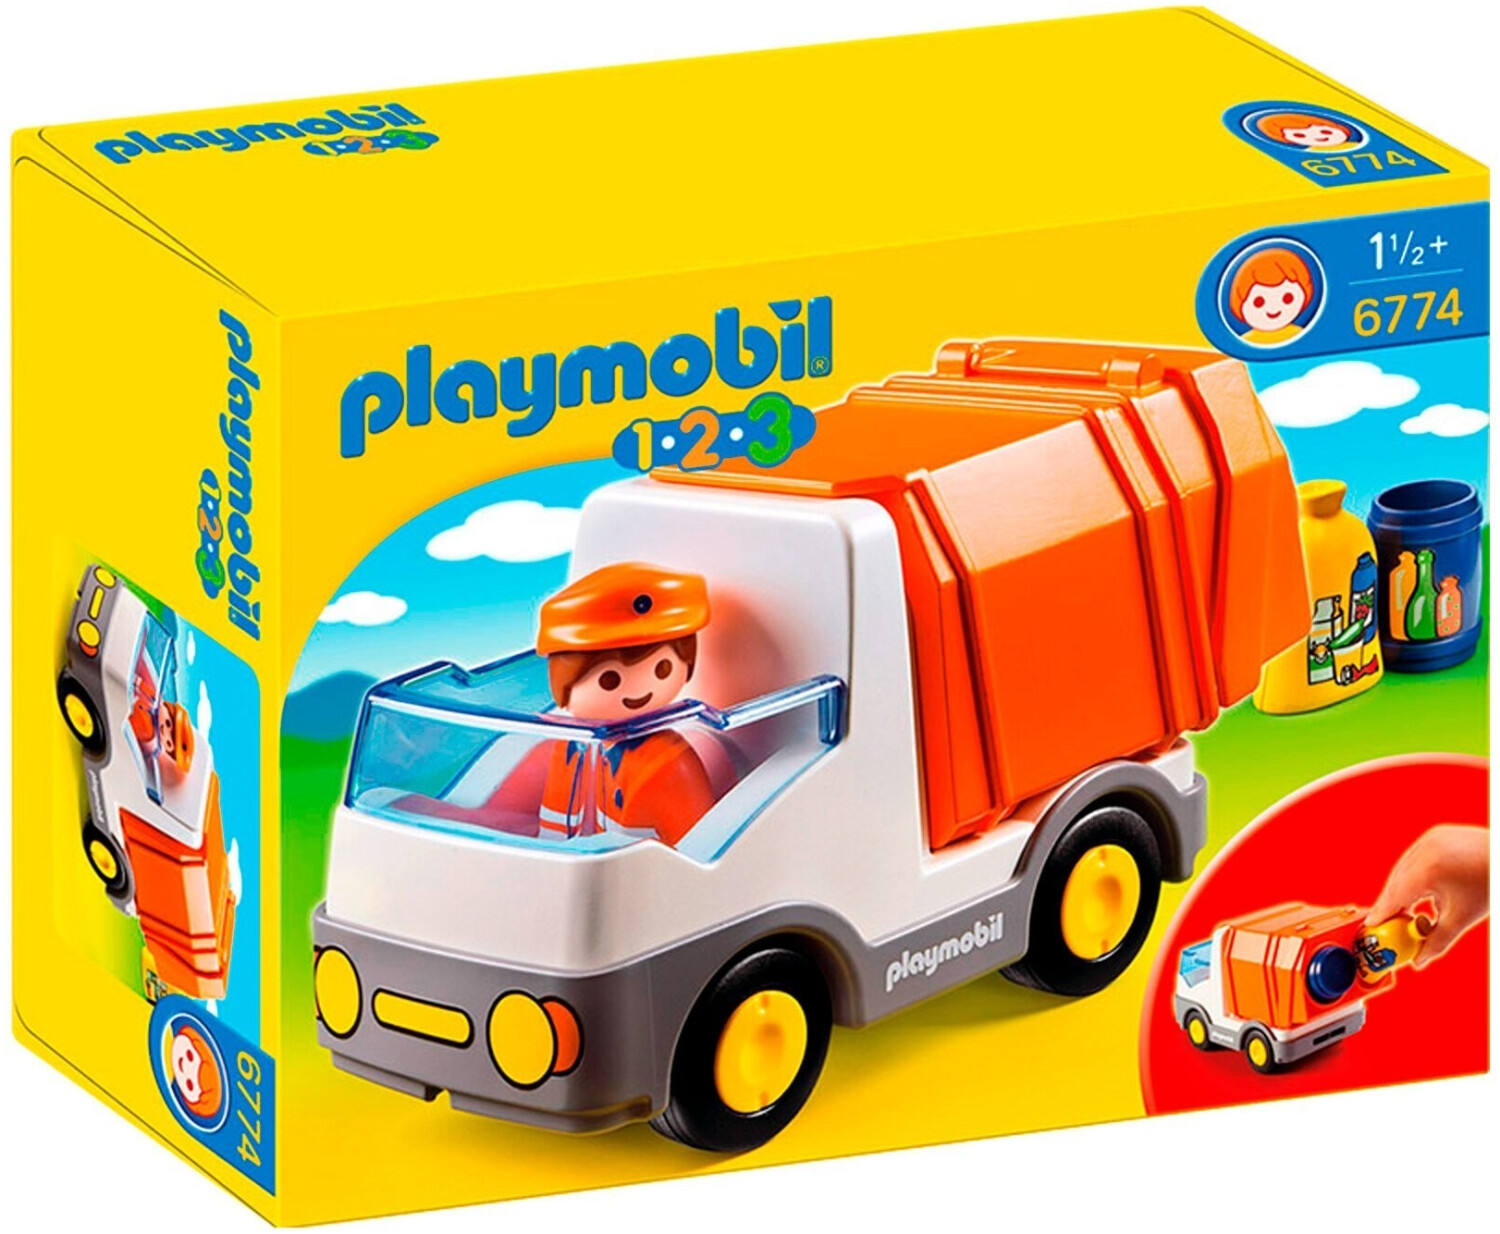 Playmobil Müllauto (6774) ab 9,99 €